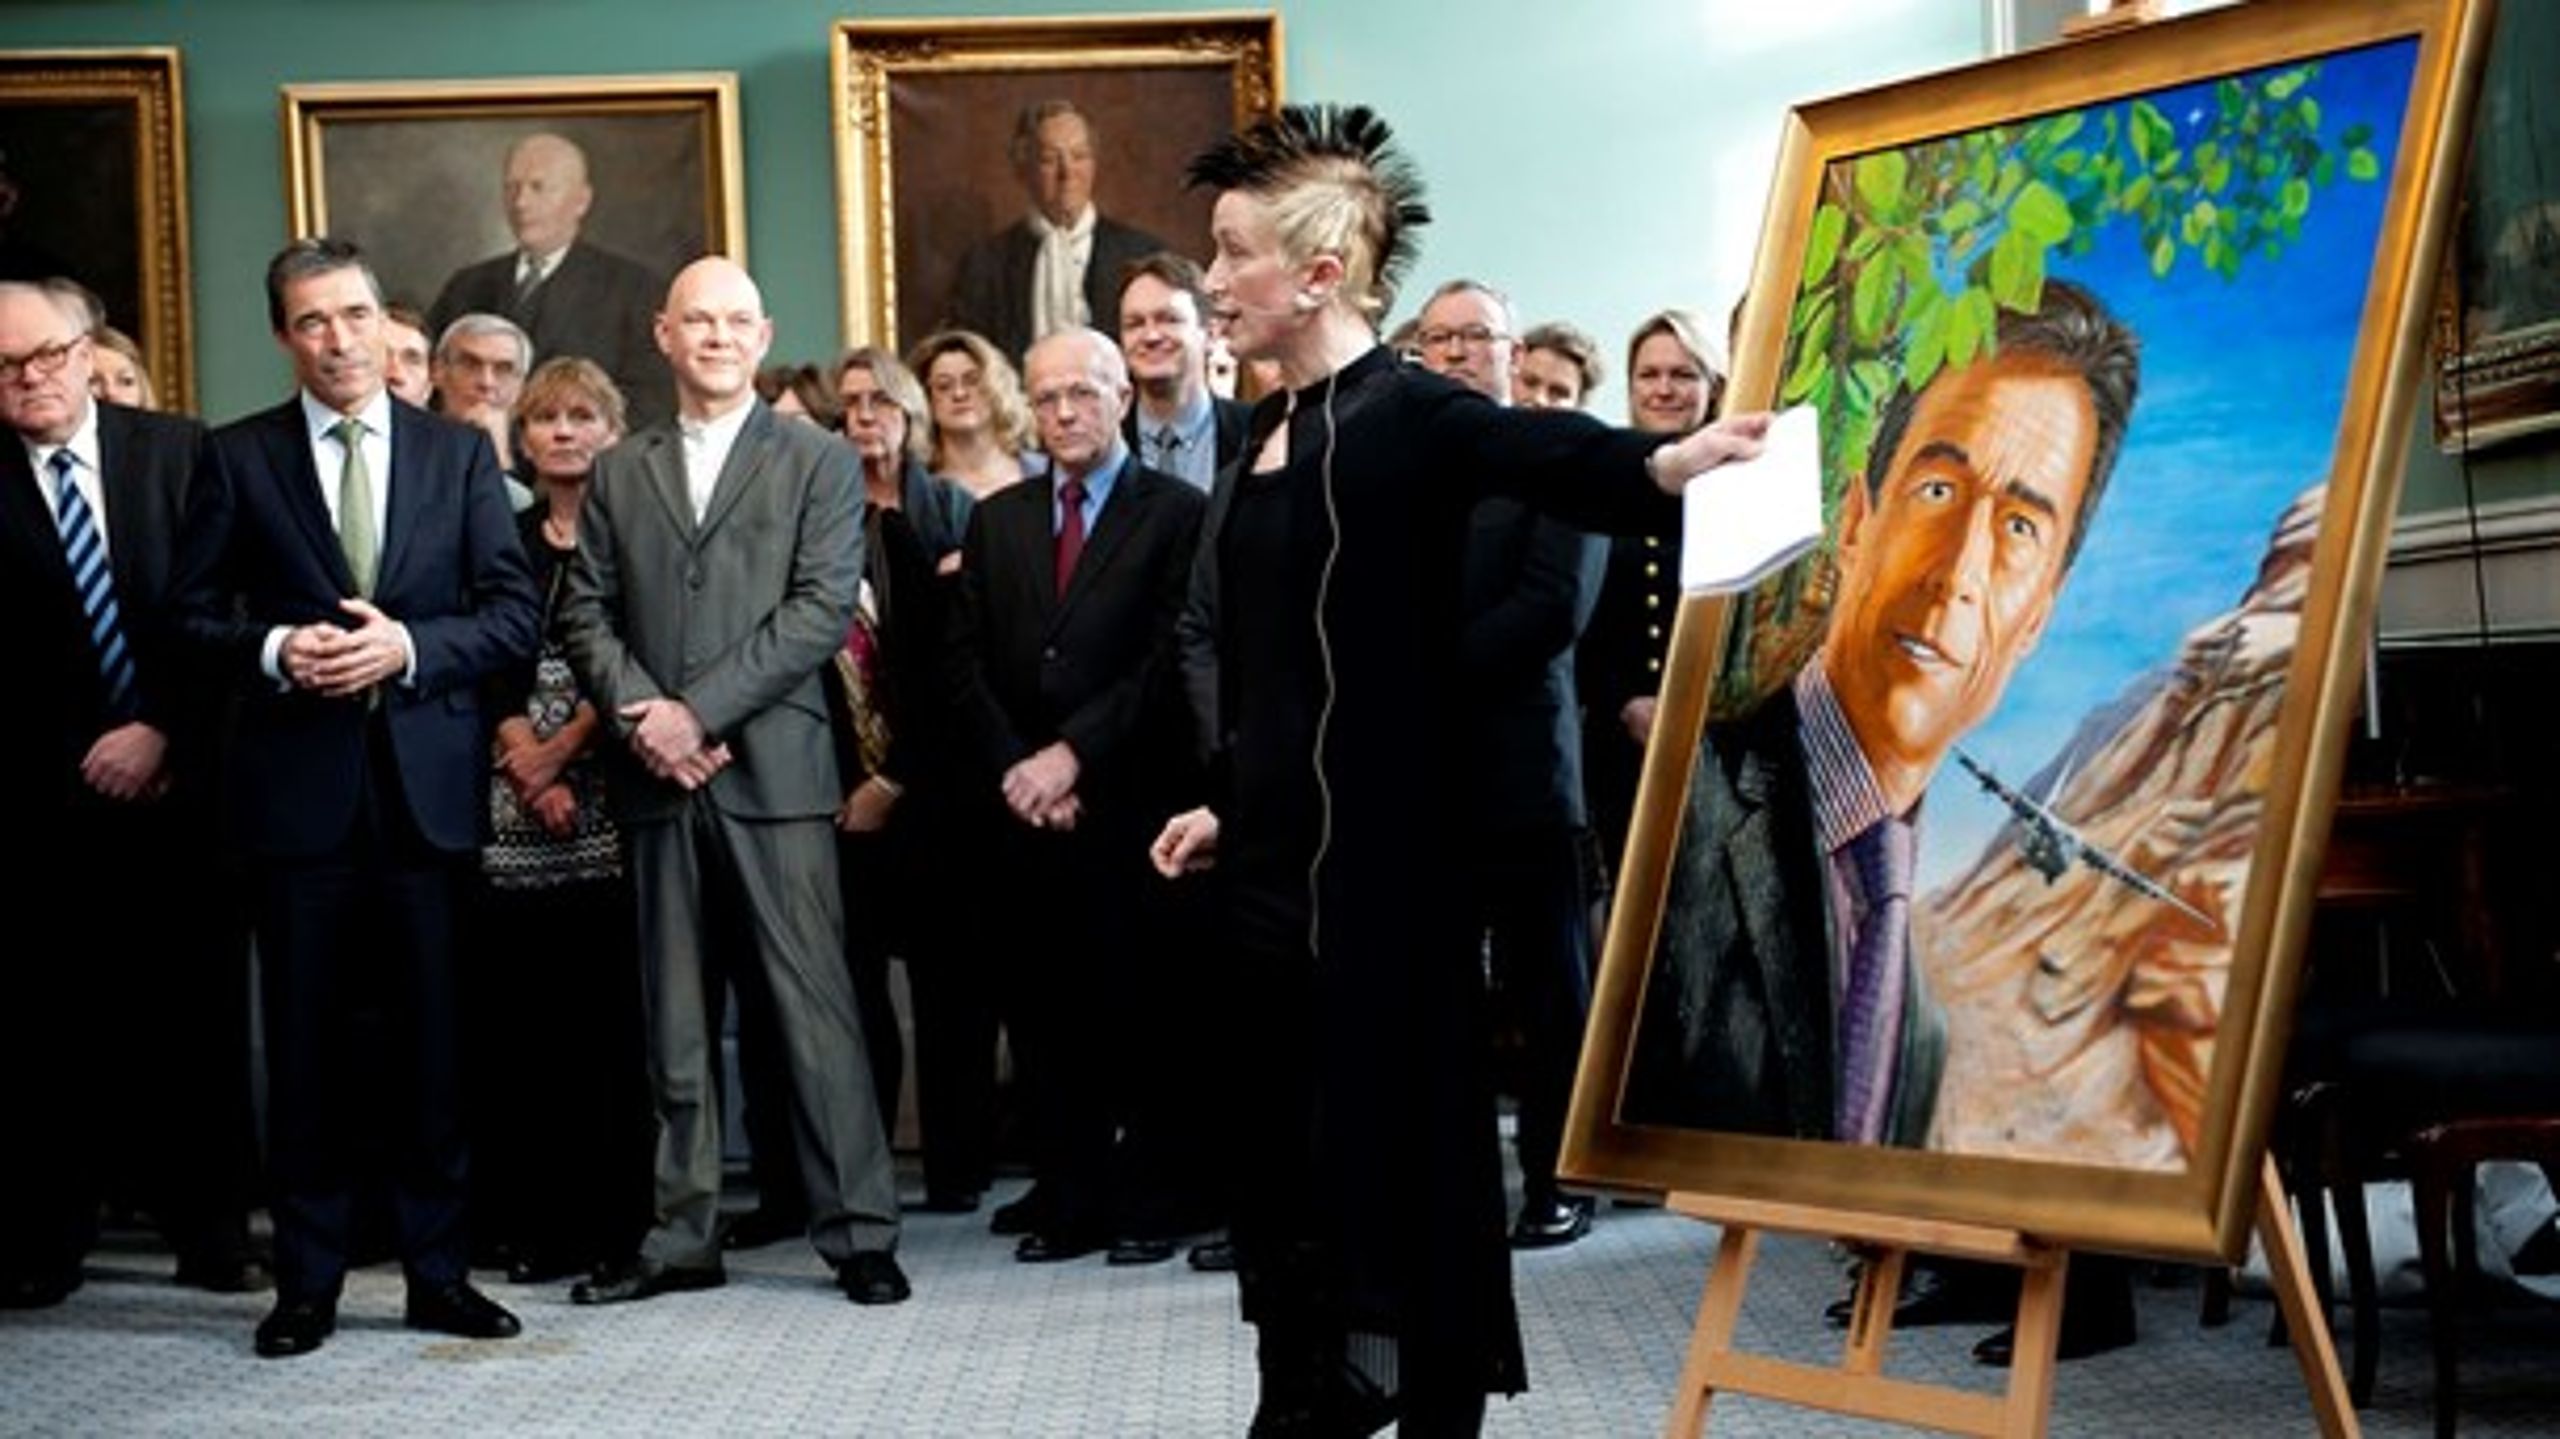 Kunstmaler Simone Aaberg Kærn illustrerede armslængdens væsentlighed ved at lade Anders Fogh Rasmussen træffe alle beslutninger om sit eget portræt, fortæller hun.